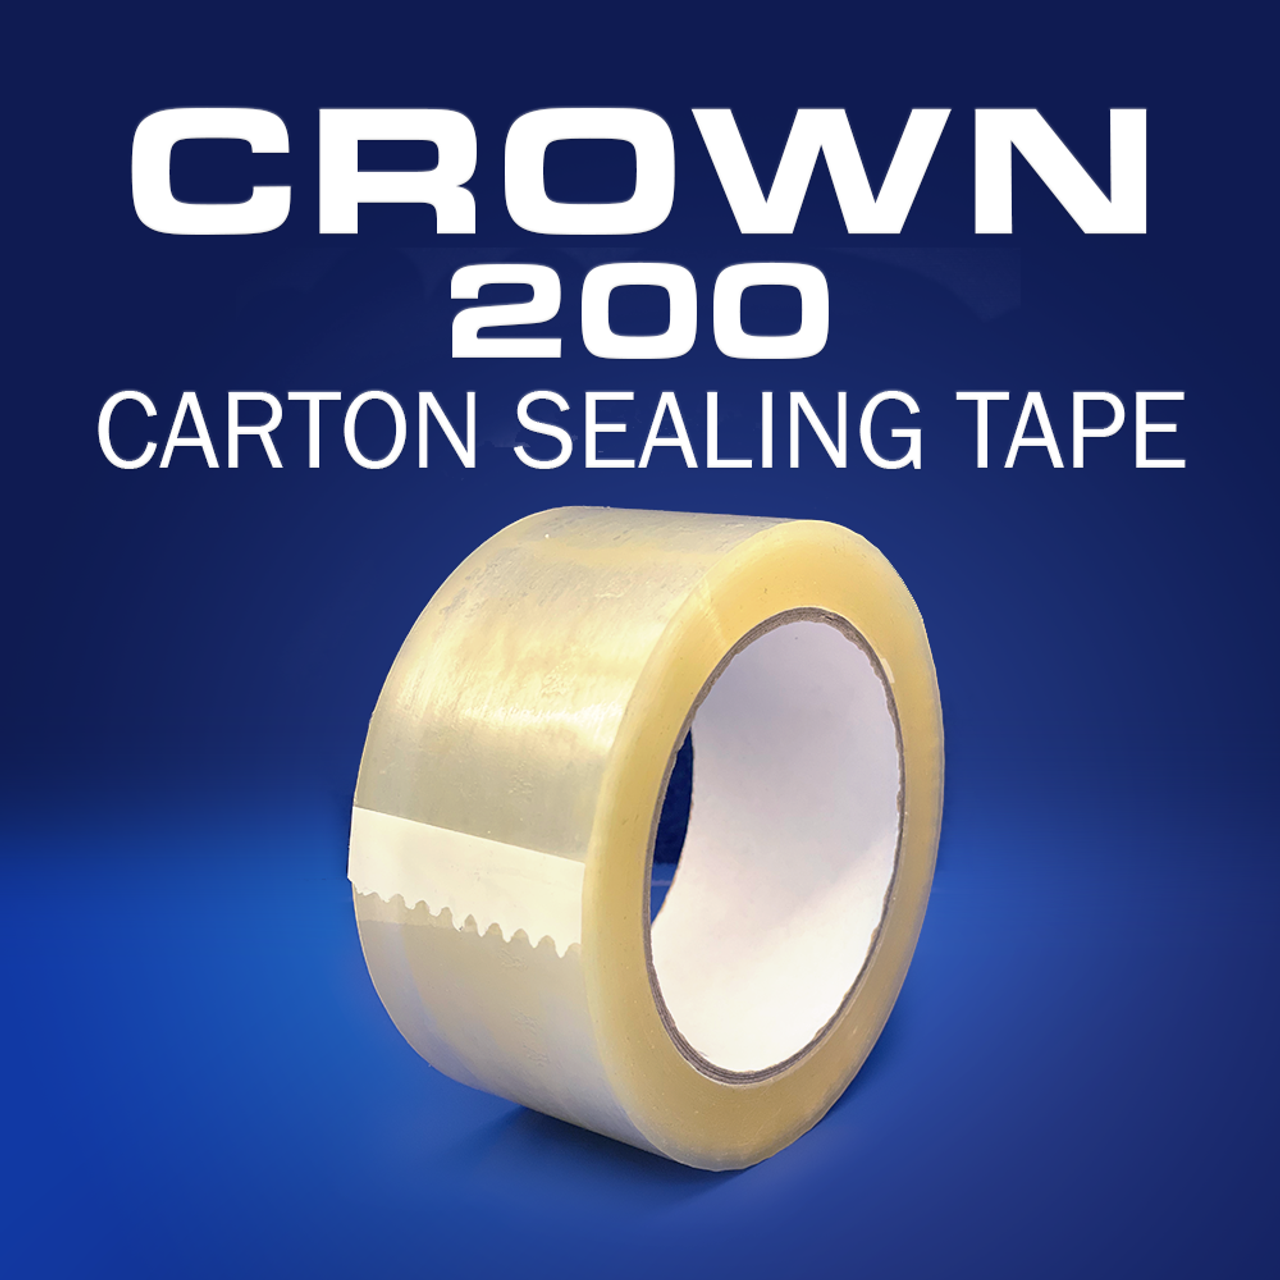 Crown 200 | 1.6mil Hot Melt Carton Sealing Tape | Hand